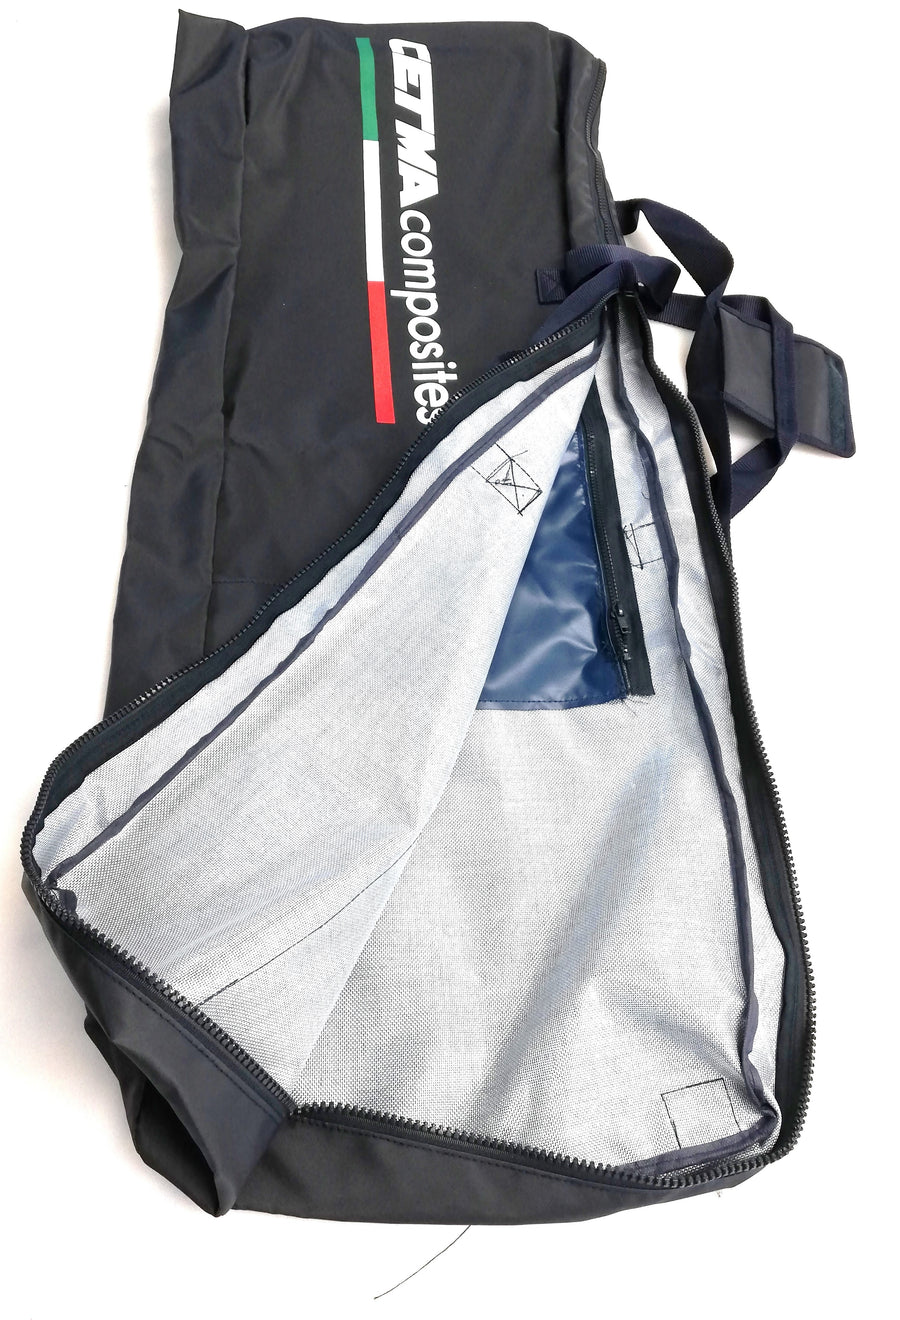 Cetma - Freediving Tasche mit Reißverschluss